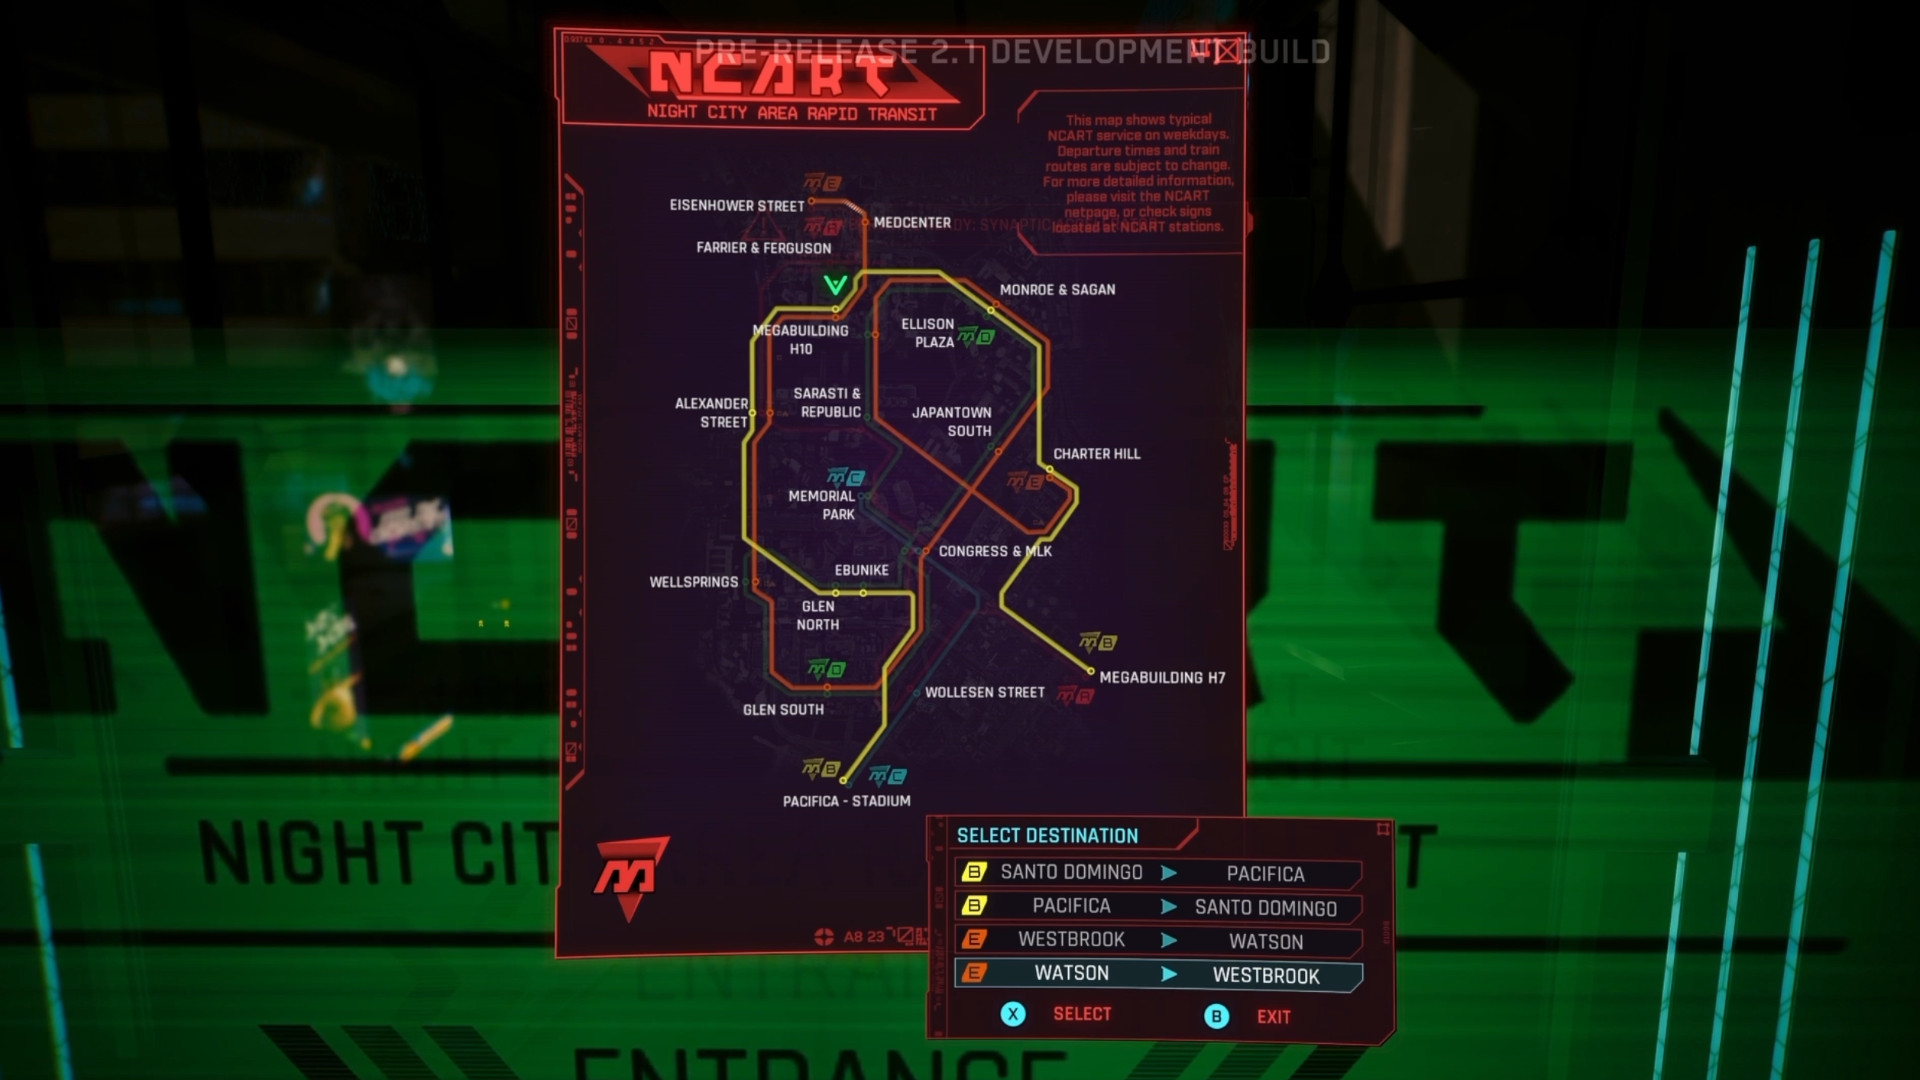 Патч 2.1 для Cyberpunk 2077 добавляет иммерсивную систему метро в качестве «ролевой функции».